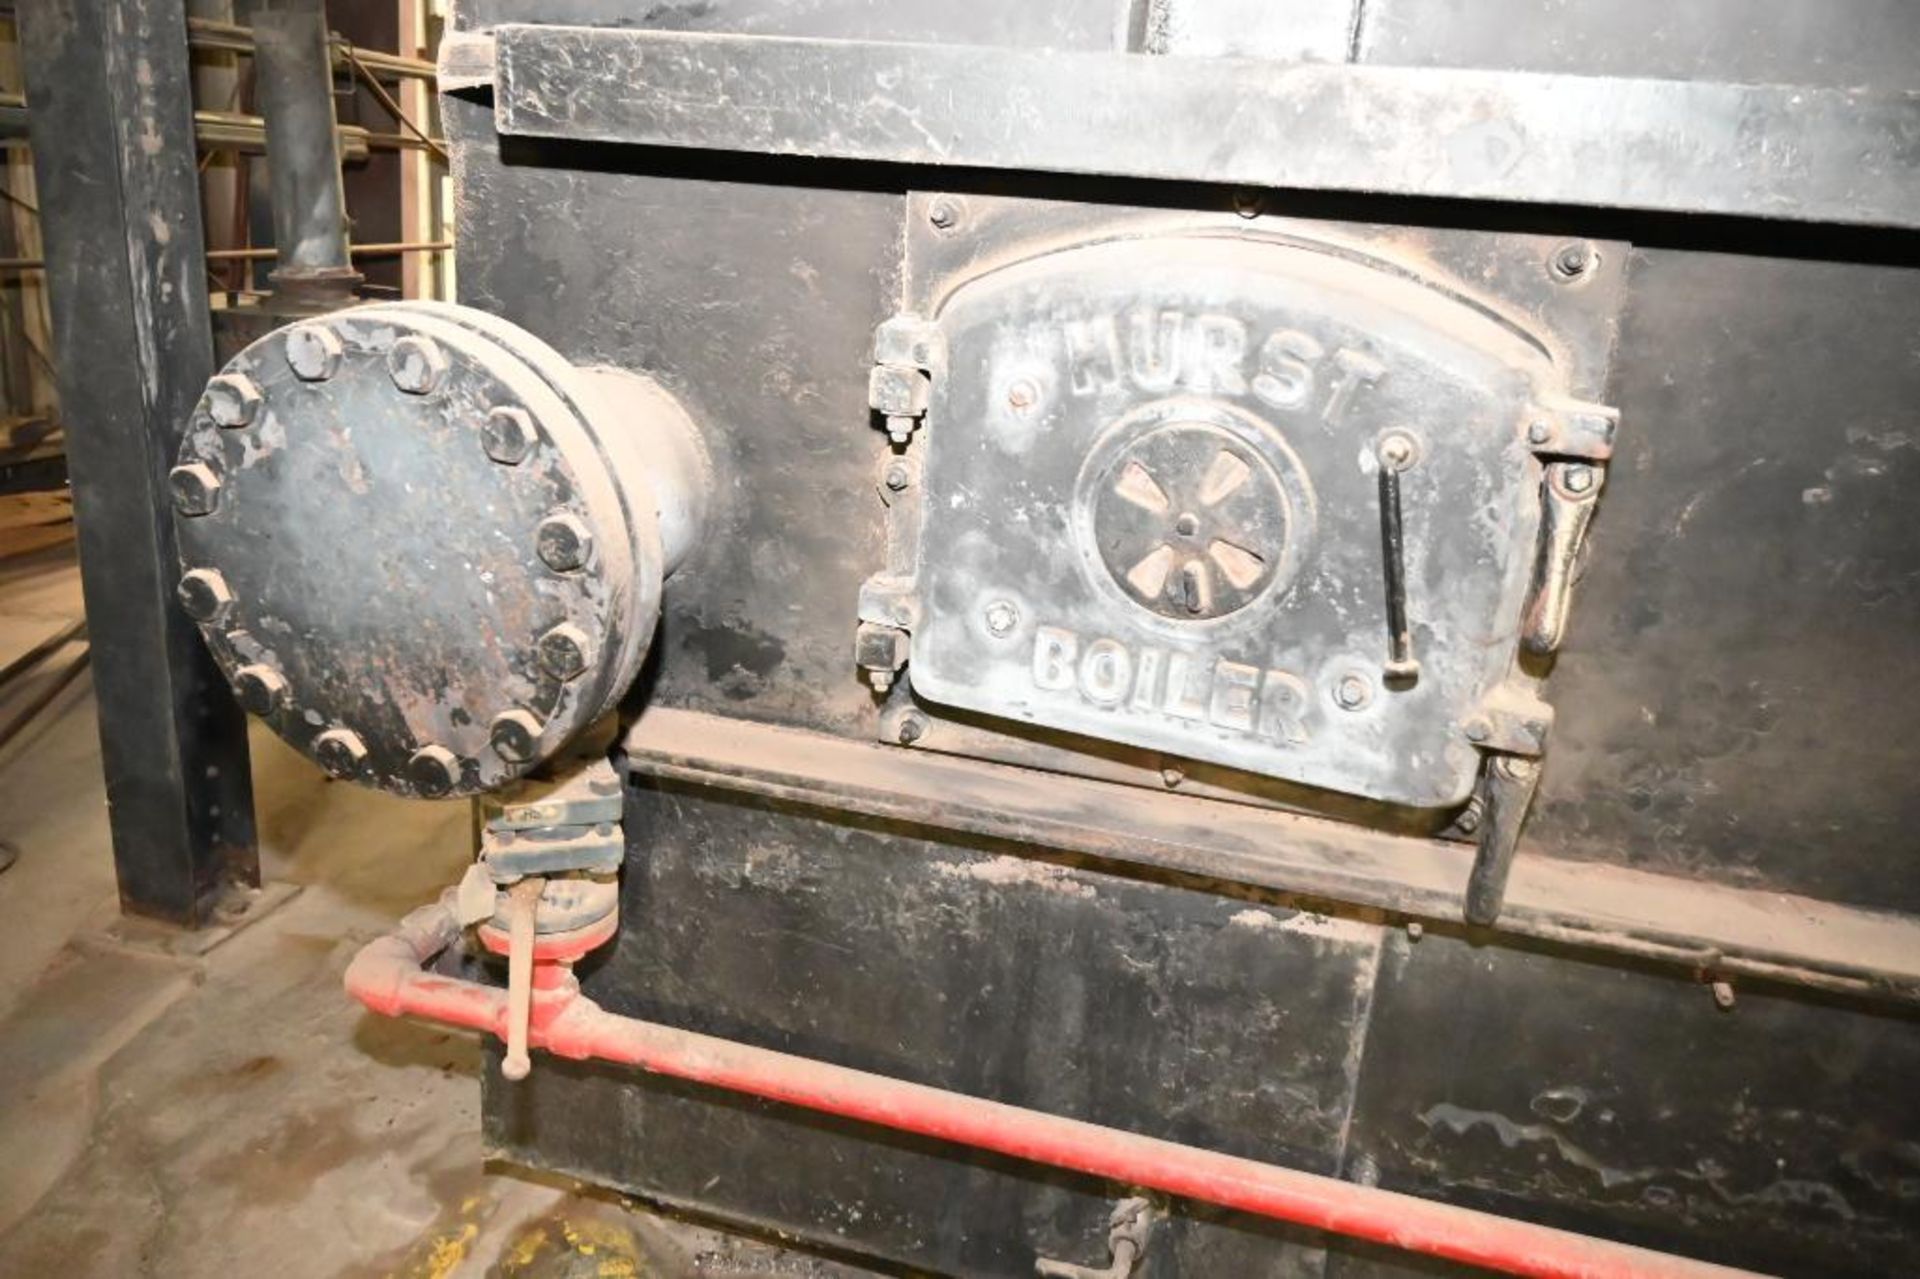 1996 Hurst Boiler System - Image 195 of 271